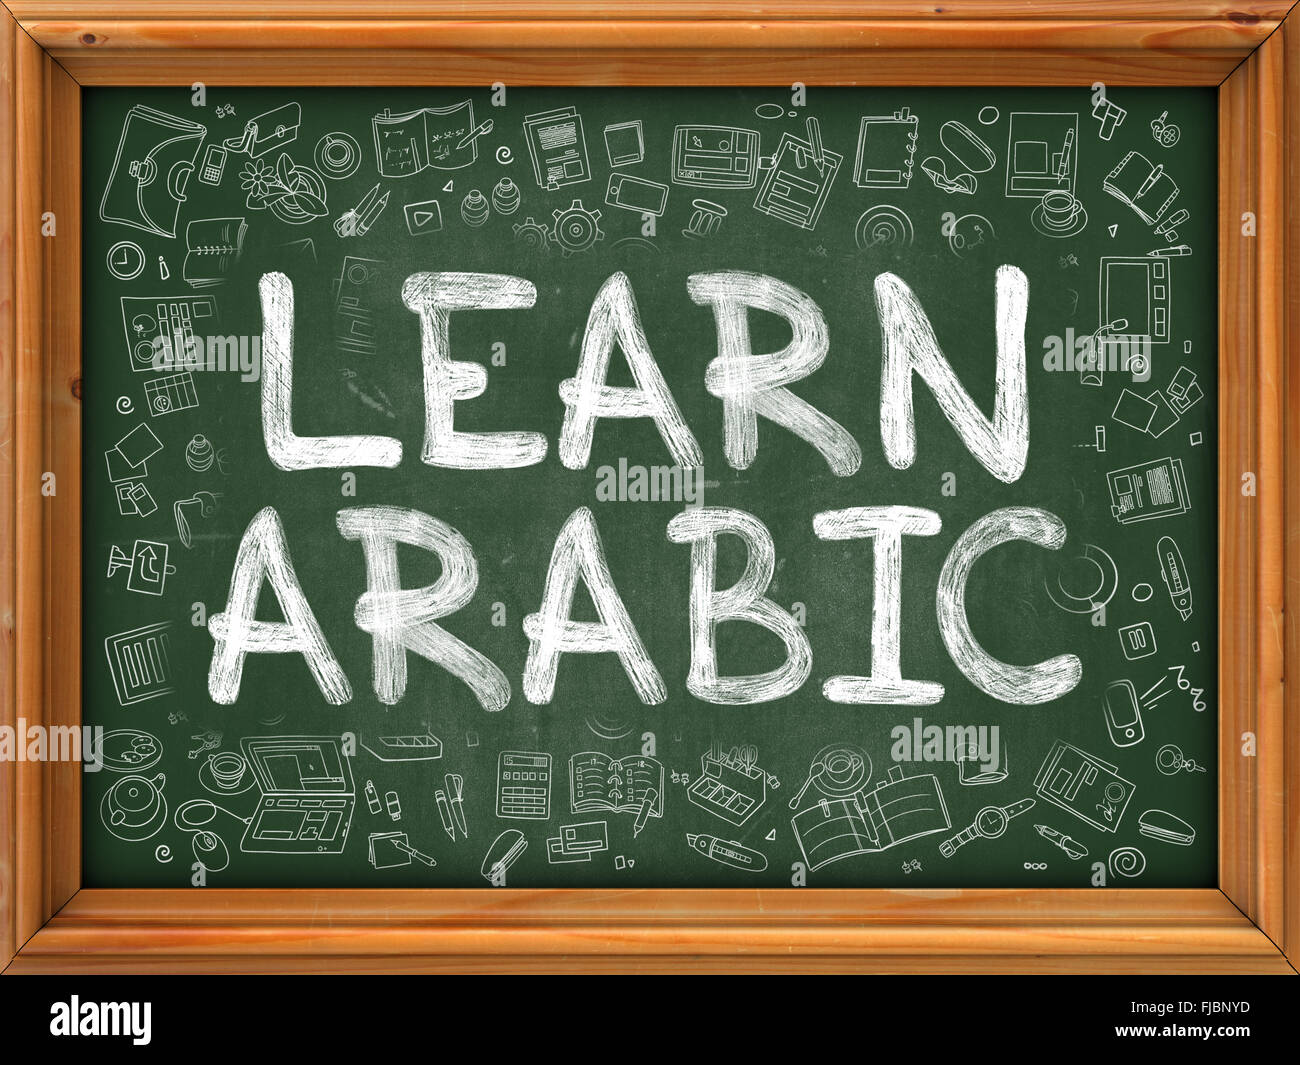 Lernen Sie Arabisch Konzept. Doodle-Symbole auf der Tafel. Stockfoto